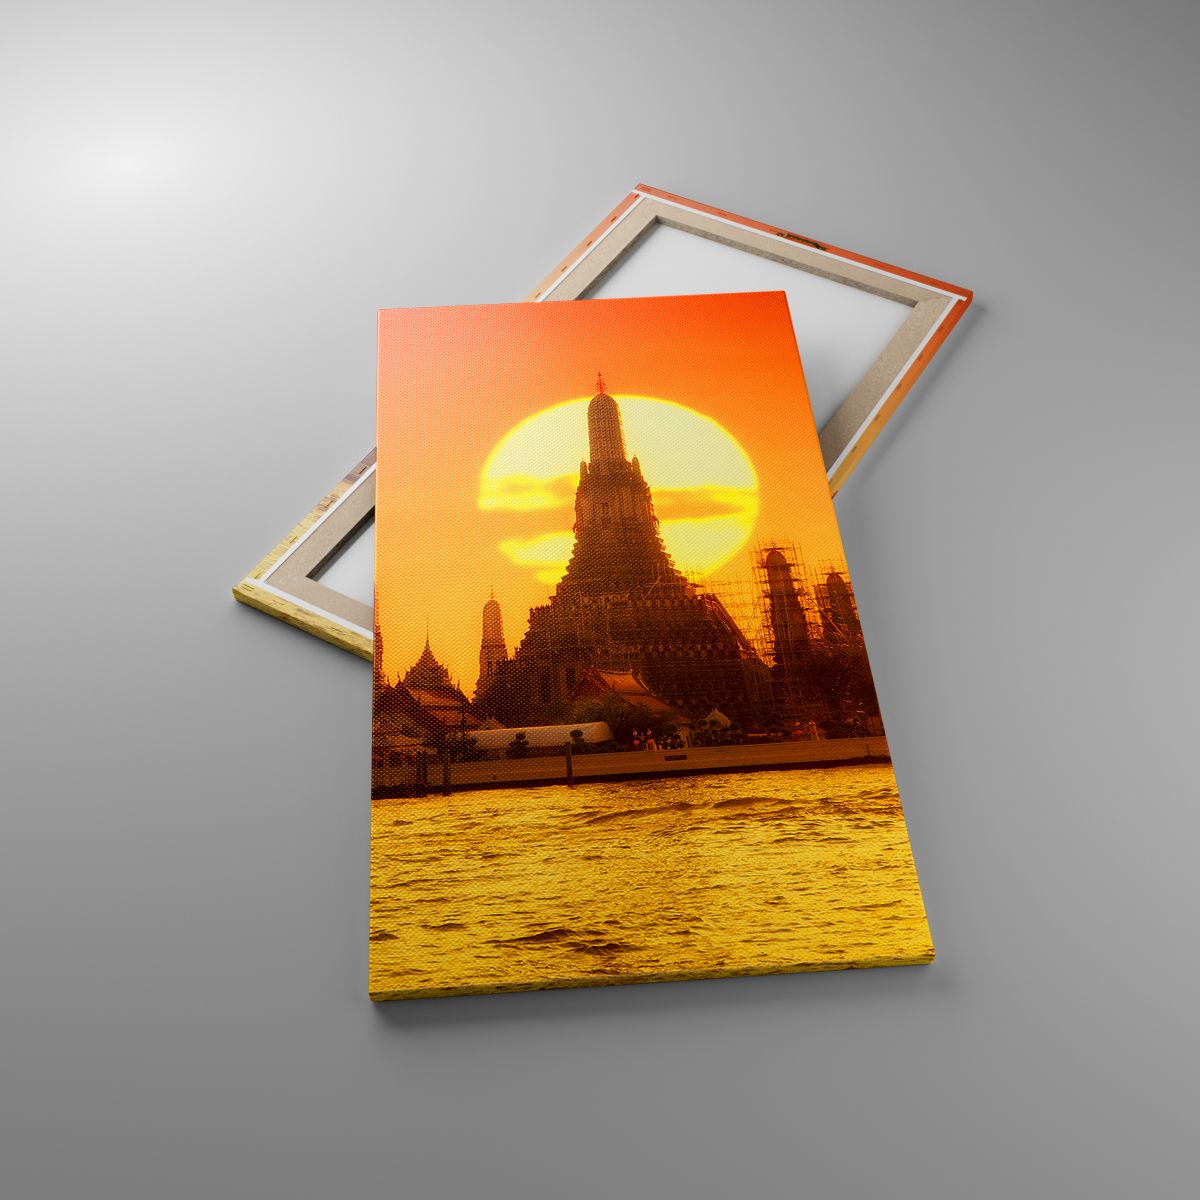 Obrazy Bangkok, Obrazy Świątynia Świtu, Obrazy Tajlandia, Obrazy Słońce, Obrazy Buddyzm